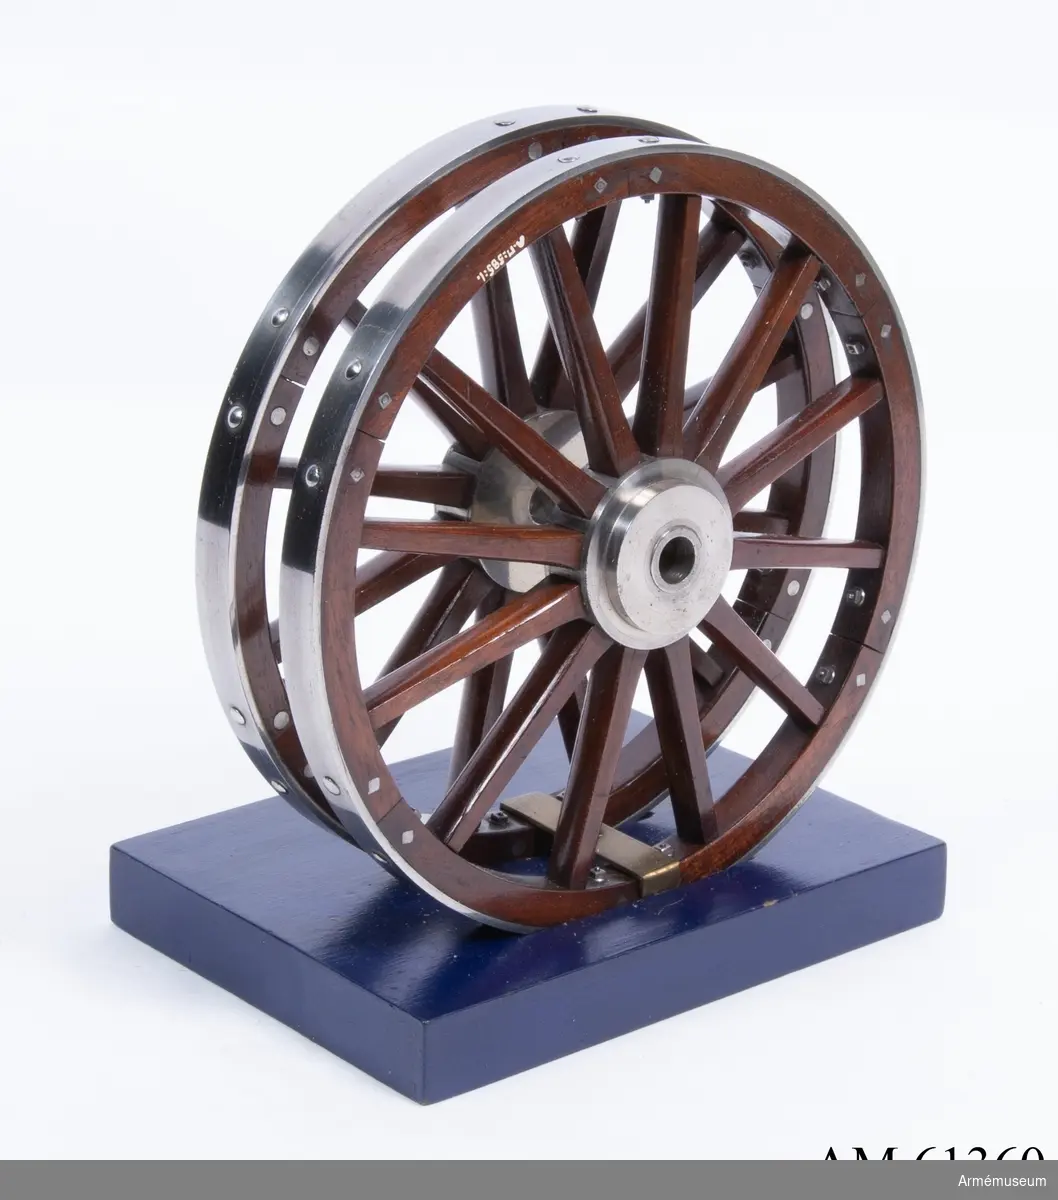 Grupp F I.
Skala 1/8.
Till modell av 23 cm framladdningsbombkanon m/1840. Kapten F A Spaks katalog 1888. Dylika hjul användes även till lavettage m/1846 för 23 cm slätborrade framladdningsbombkanoner.